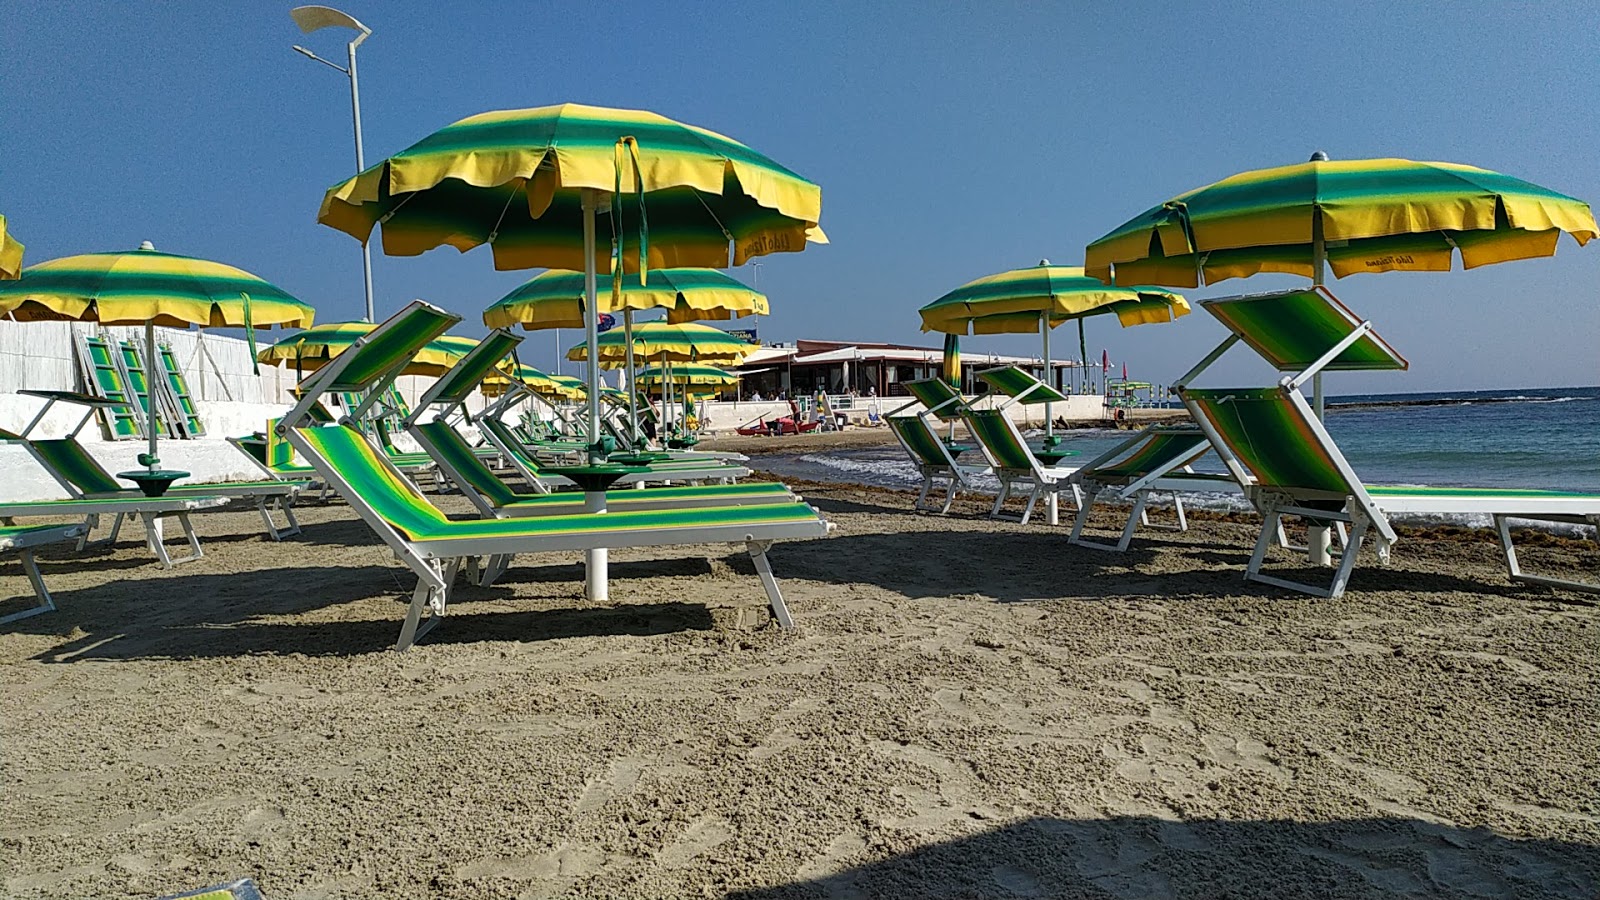 Spiaggia di Specchiolla'in fotoğrafı çok temiz temizlik seviyesi ile